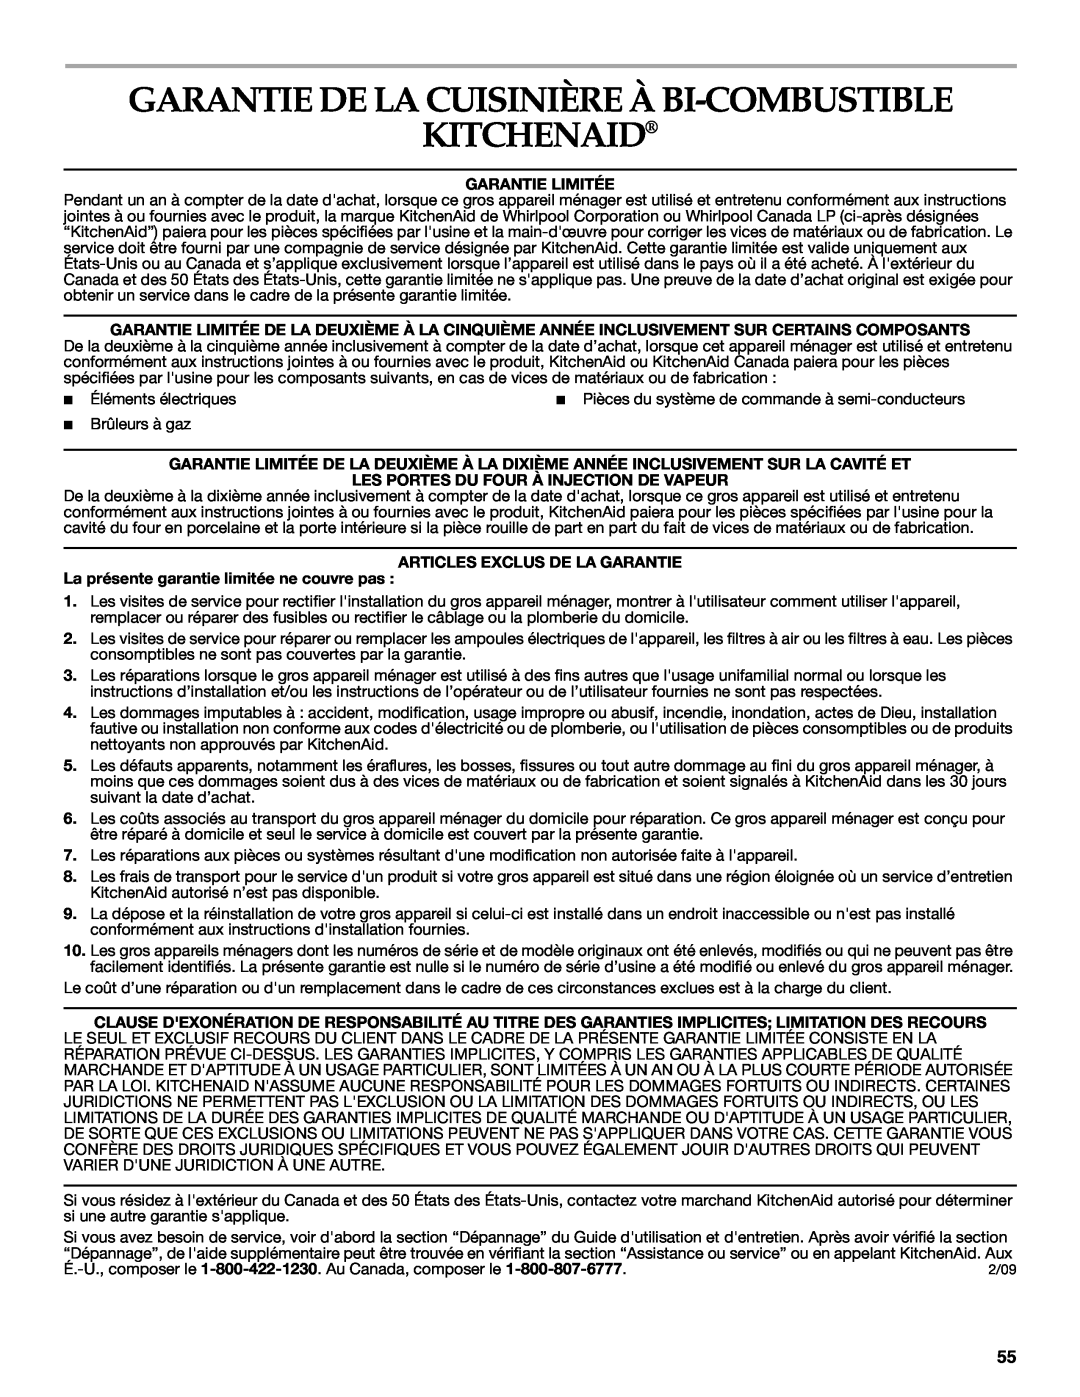 KitchenAid KDRS505XSS manual Garantie De La Cuisinière À Bi-Combustible Kitchenaid, Garantie Limitée 